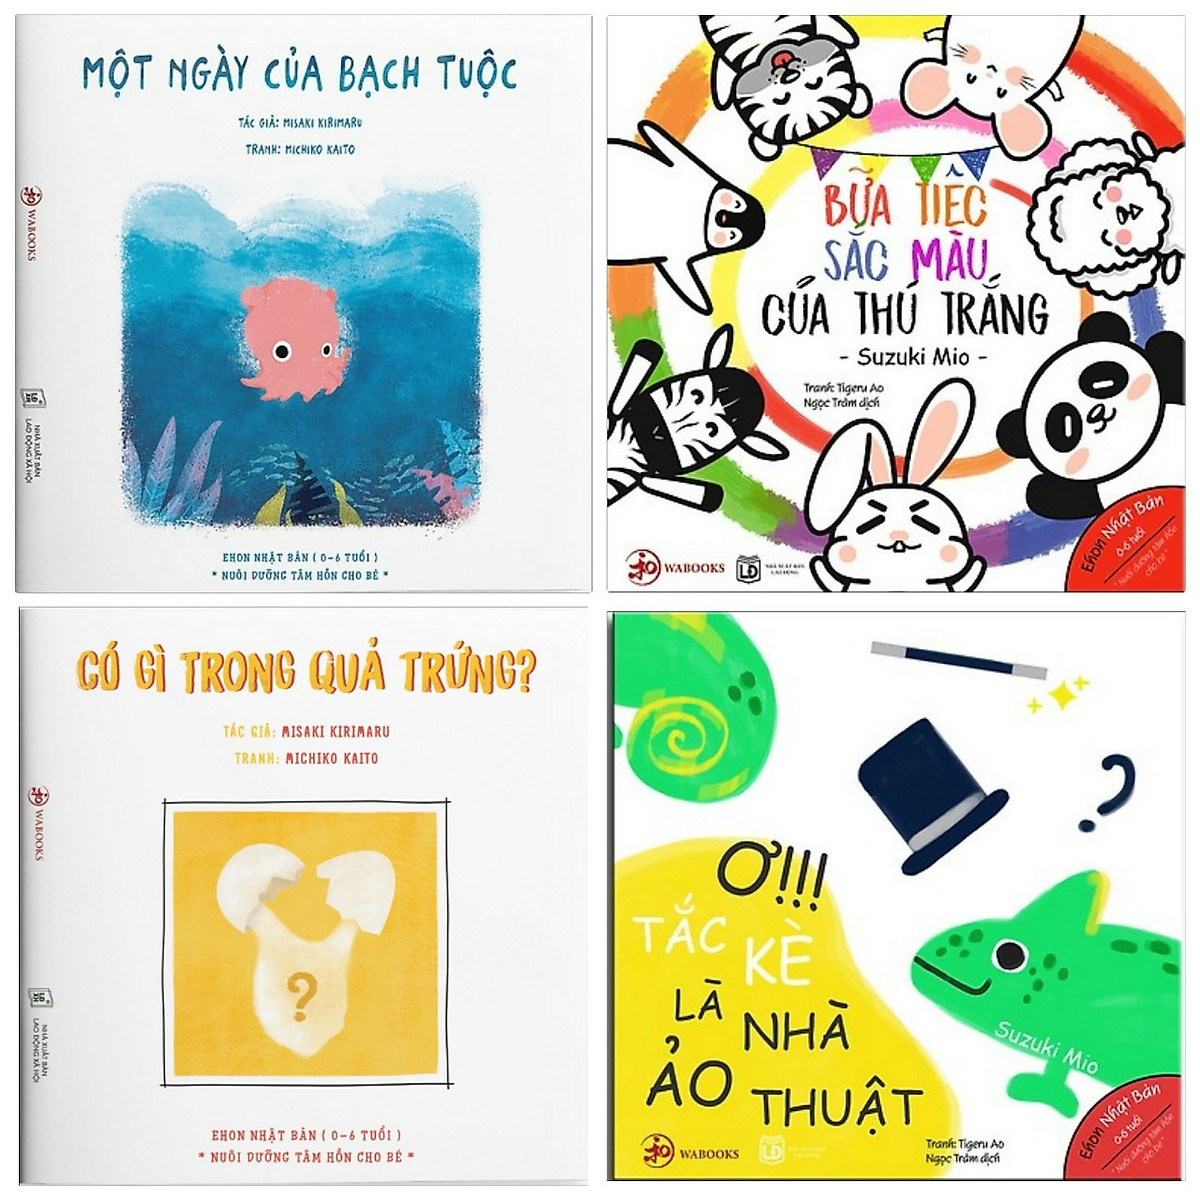 Combo 4 cuốn sách ehon nhật bản nuôi dưỡng tâm hồn cho bé: Một ngày của bạch tuộc + Bữa Tiệc Sắc Màu Của Thú Trắng + Có gì trong quả trứng? + Ơ!!! Tắc Kè Là Nhà Ảo Thuật ( Dành cho bé 0-6 tuổi) ( Tặng kèm Bookmark Happy Life)